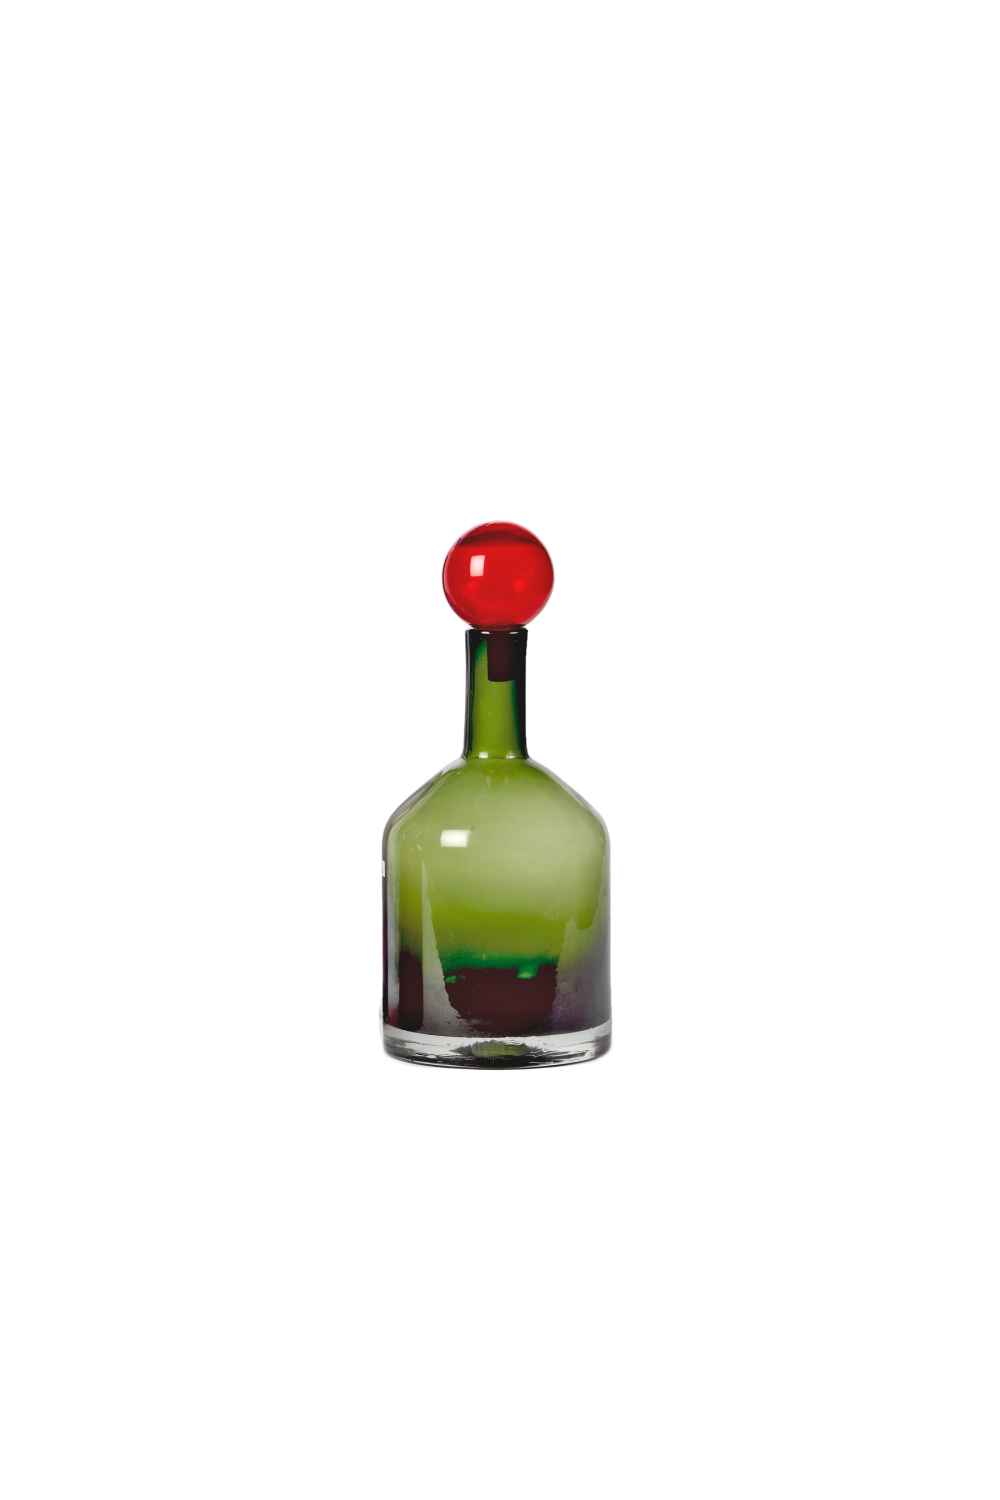 Multi-Colored Decorative Glass L | Pols Potten Bubbles and Bottles | Oroa.com